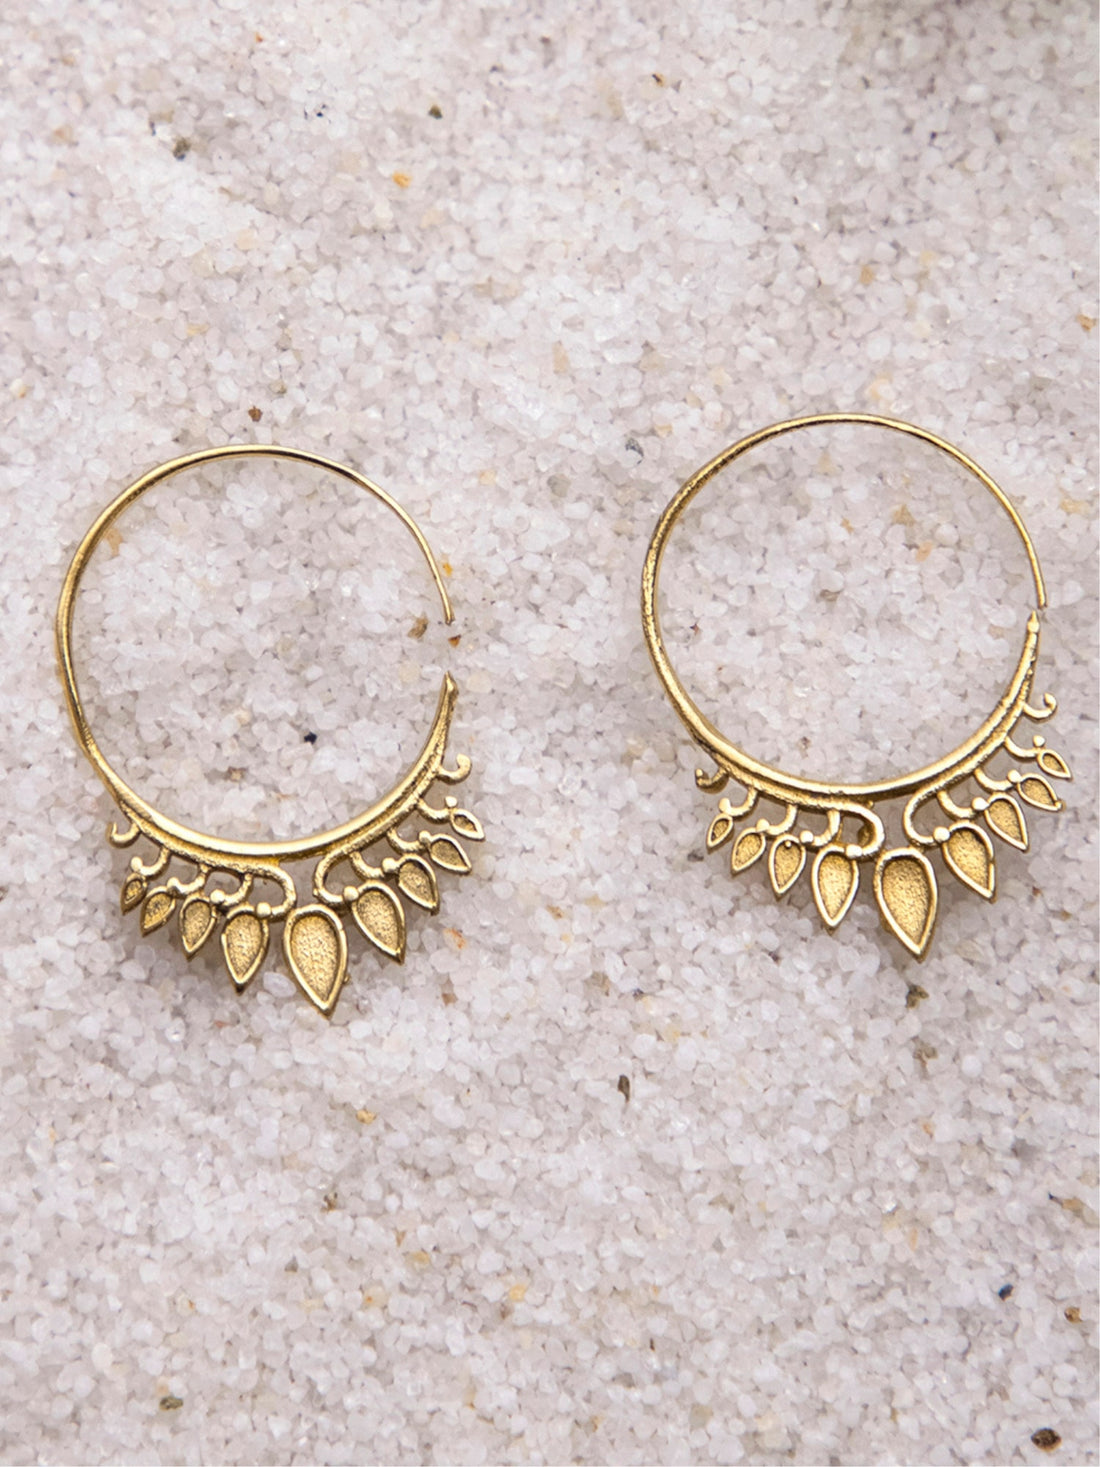 Work Wear Hoops Earrings - Traditional Gold-Plated Brass Earrings By Studio One Love